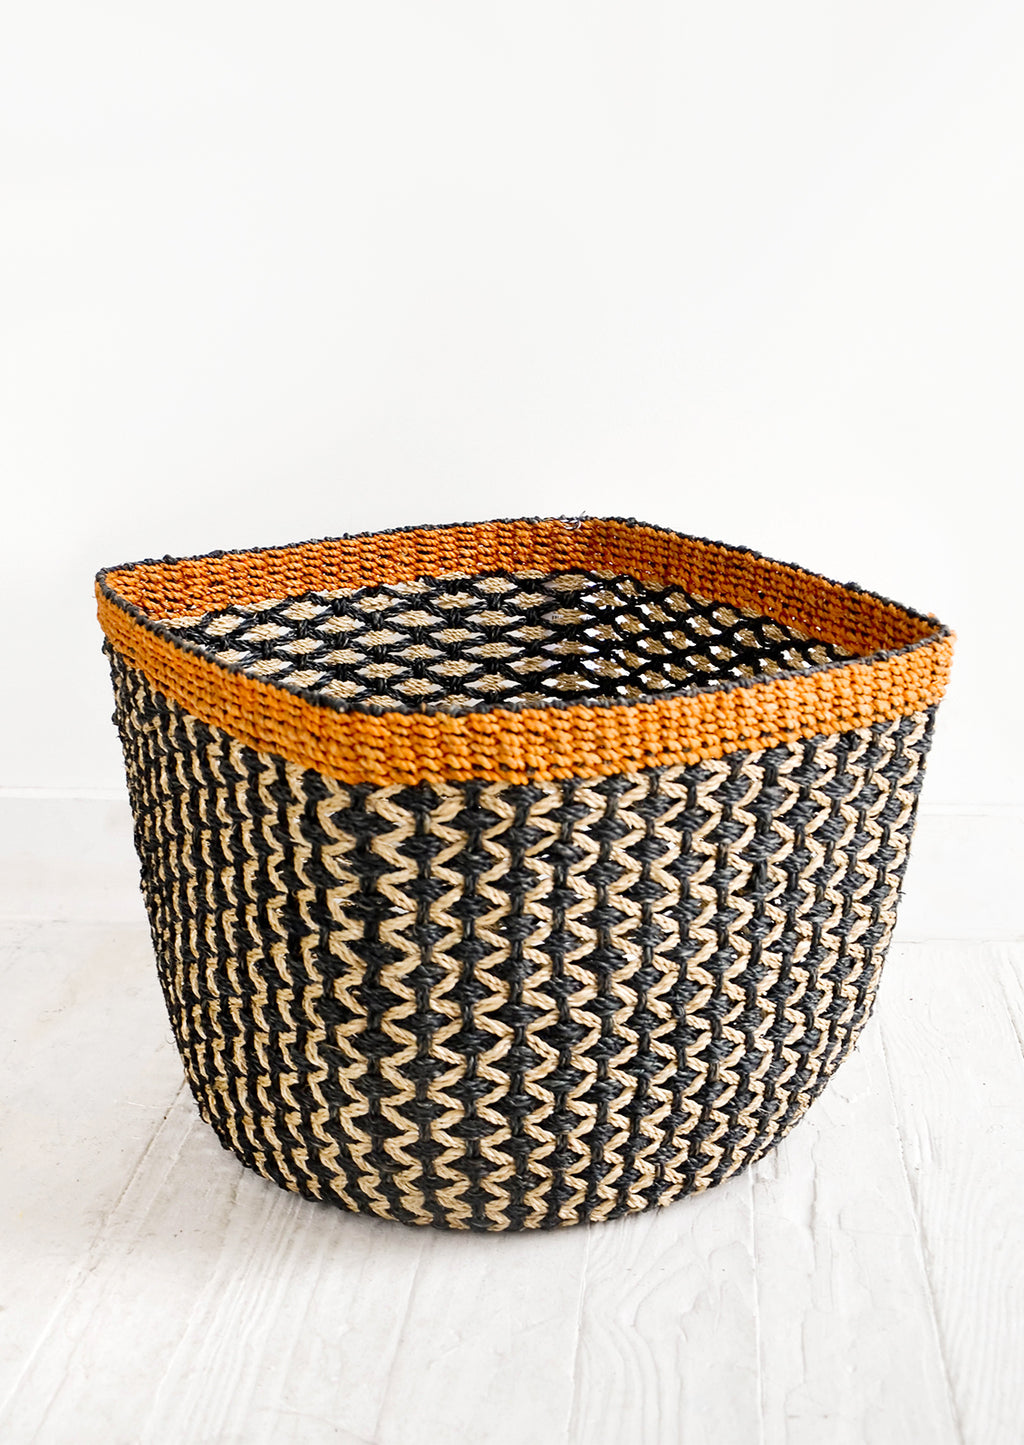 Medium: Square storage basket in black with tan zigzag design and orange top rim